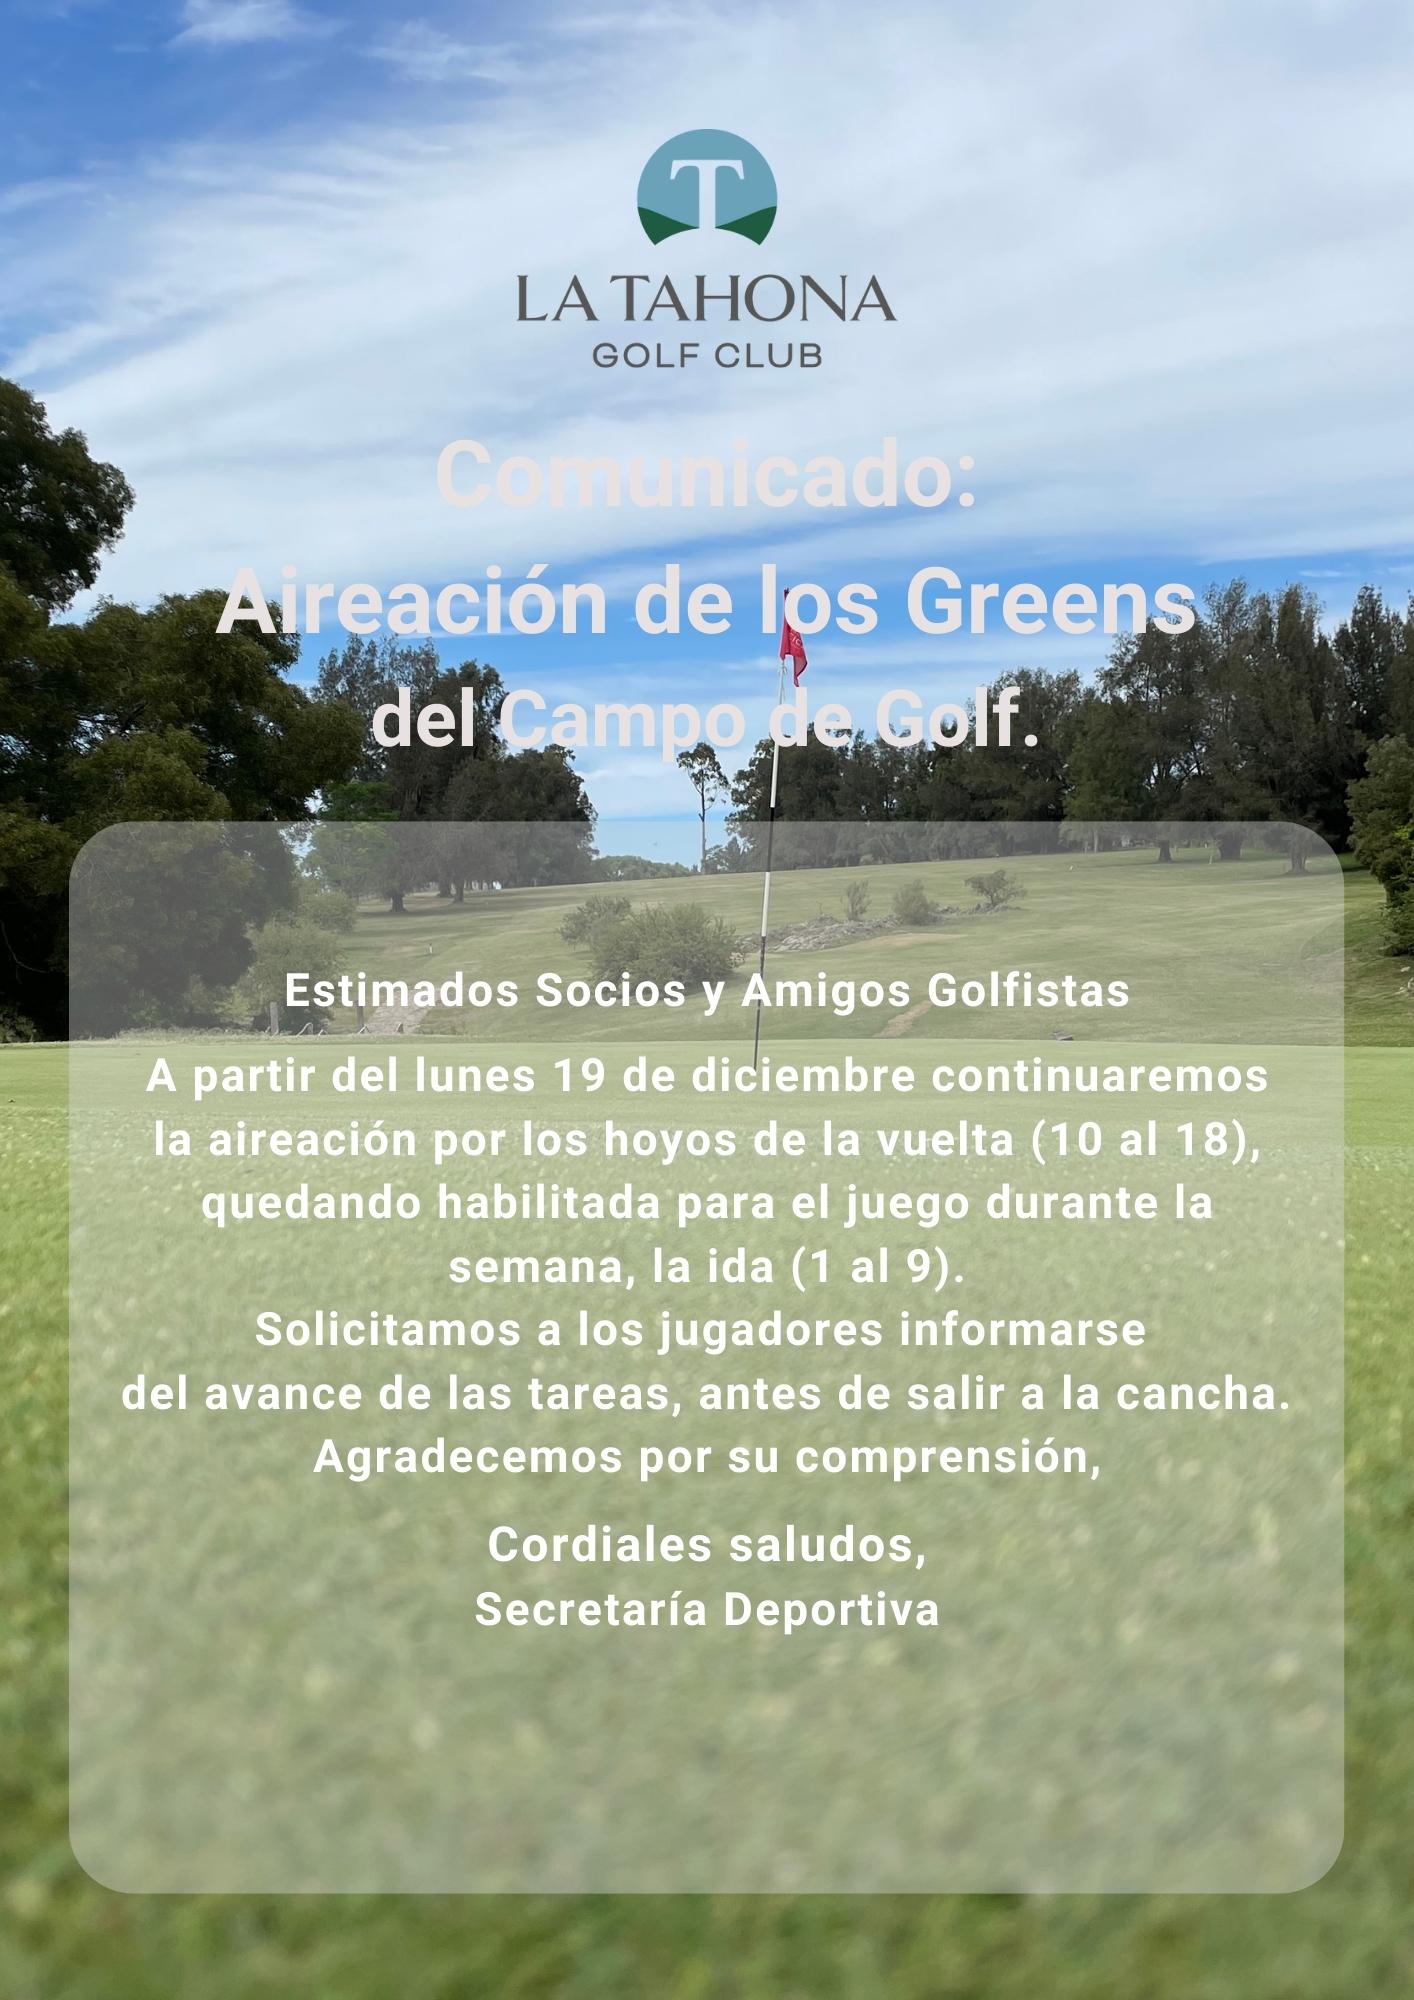 Aireación de los Greens del Campo de Golf _ del lunes 19/12 en adelante